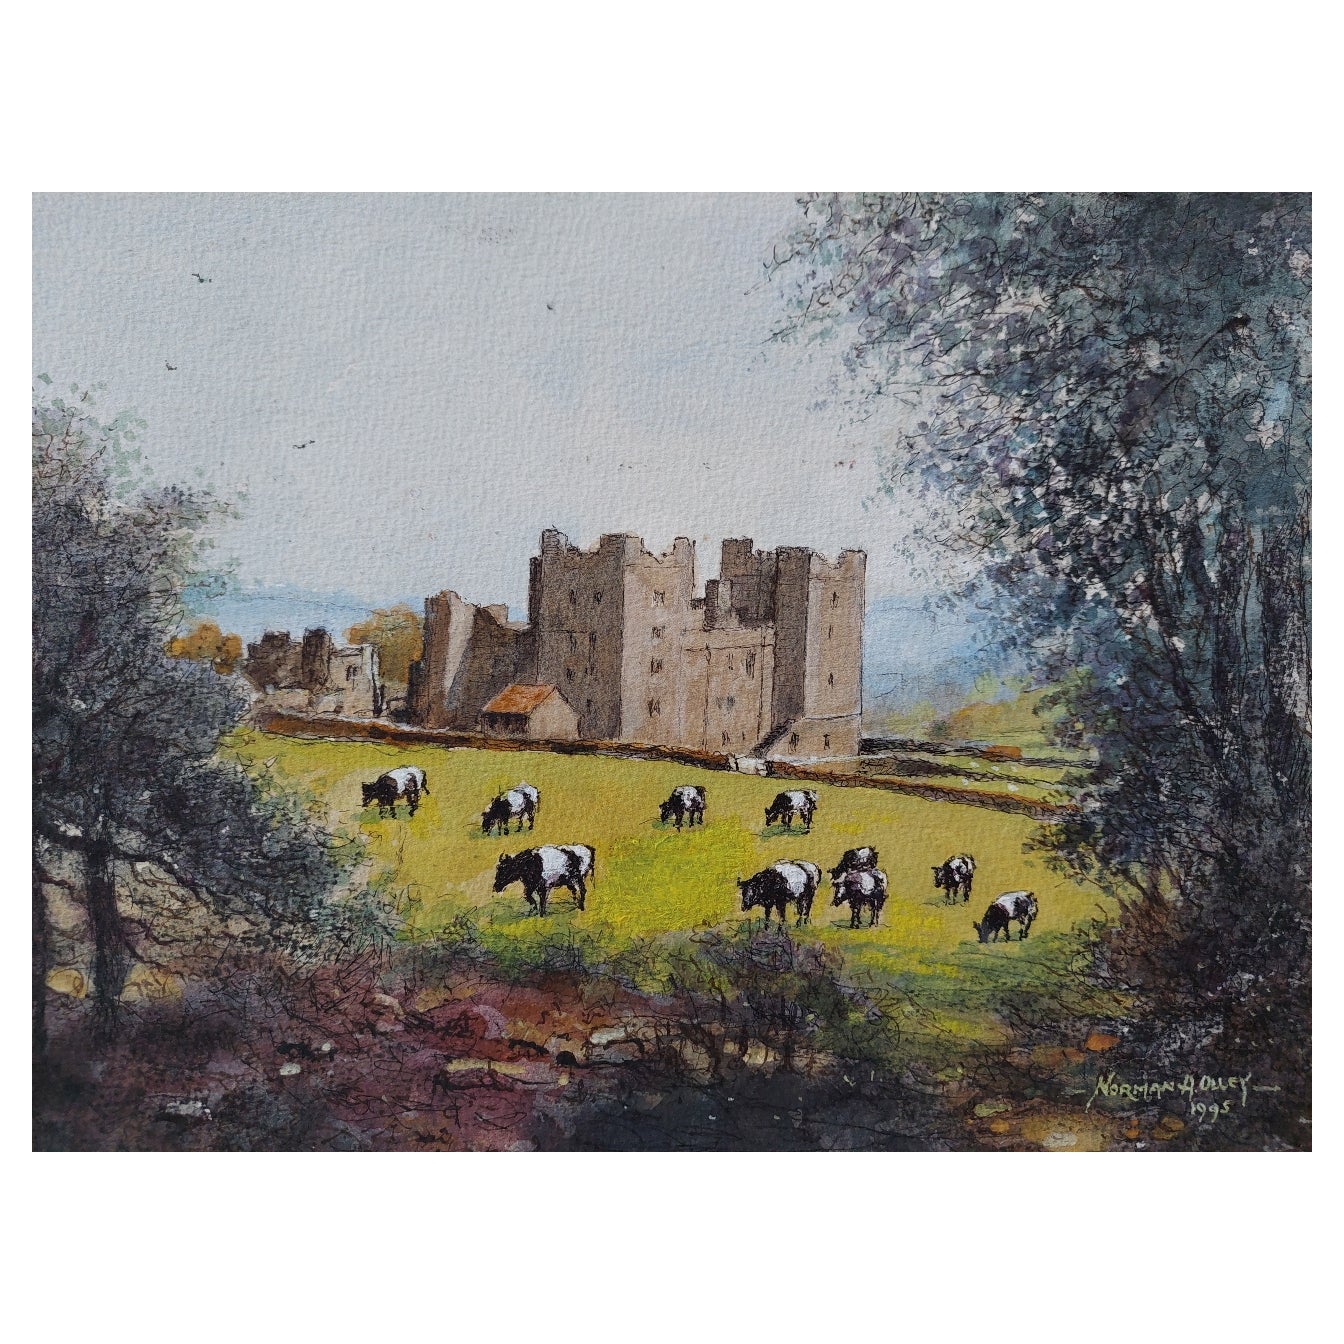 Peinture anglaise traditionnelle du château de Bolton dans le Yorkshire, Angleterre